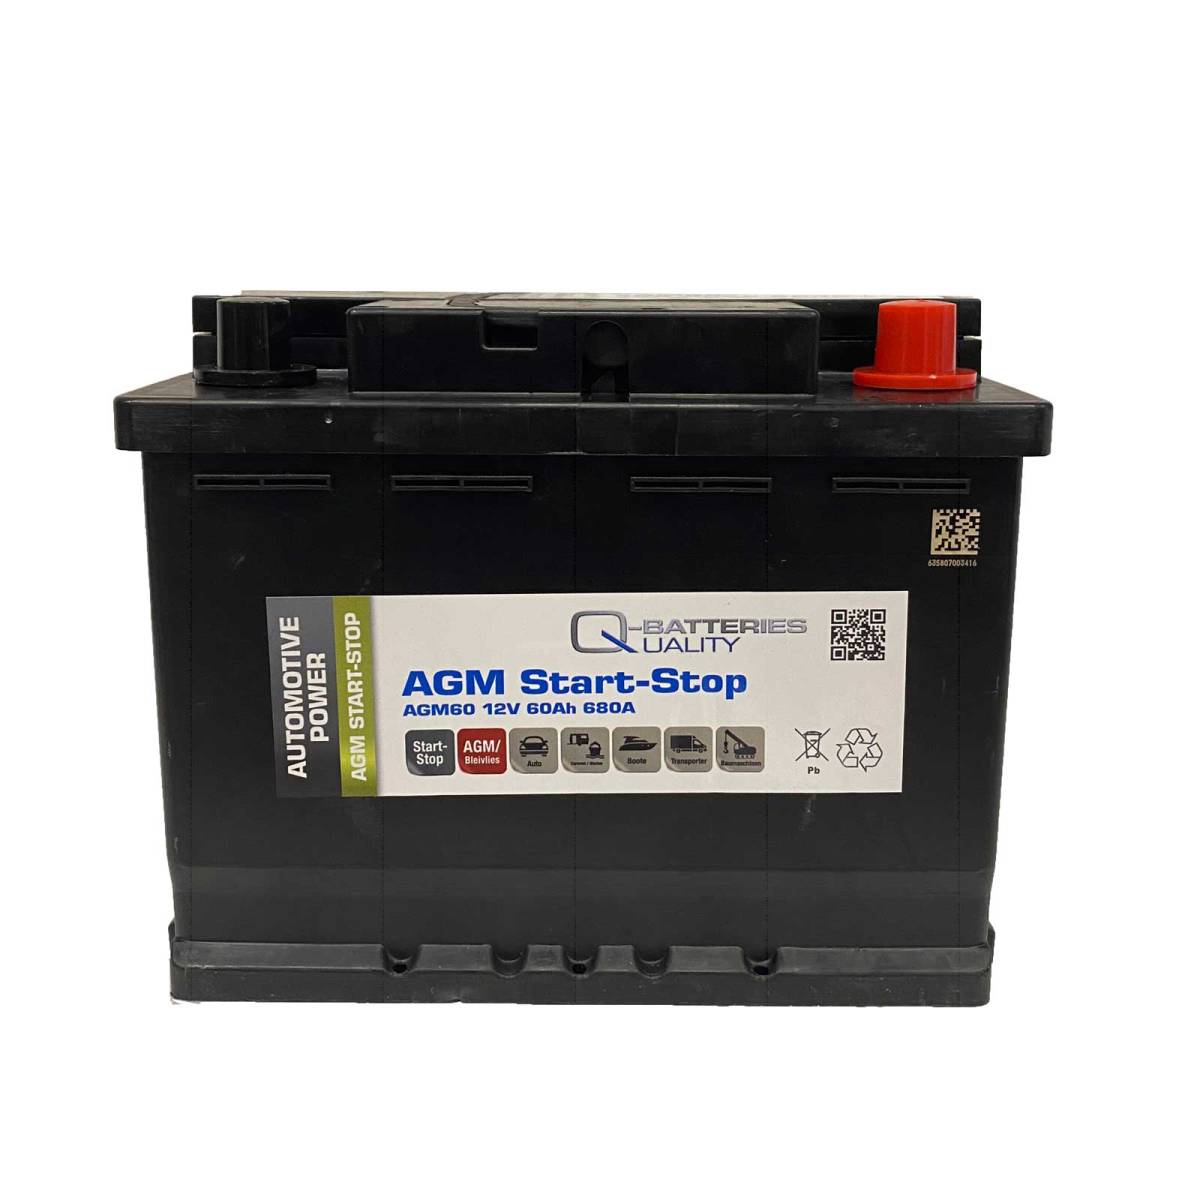 Q-Batteries Start-Stop Autobatterie AGM60 12V 60Ah 680A